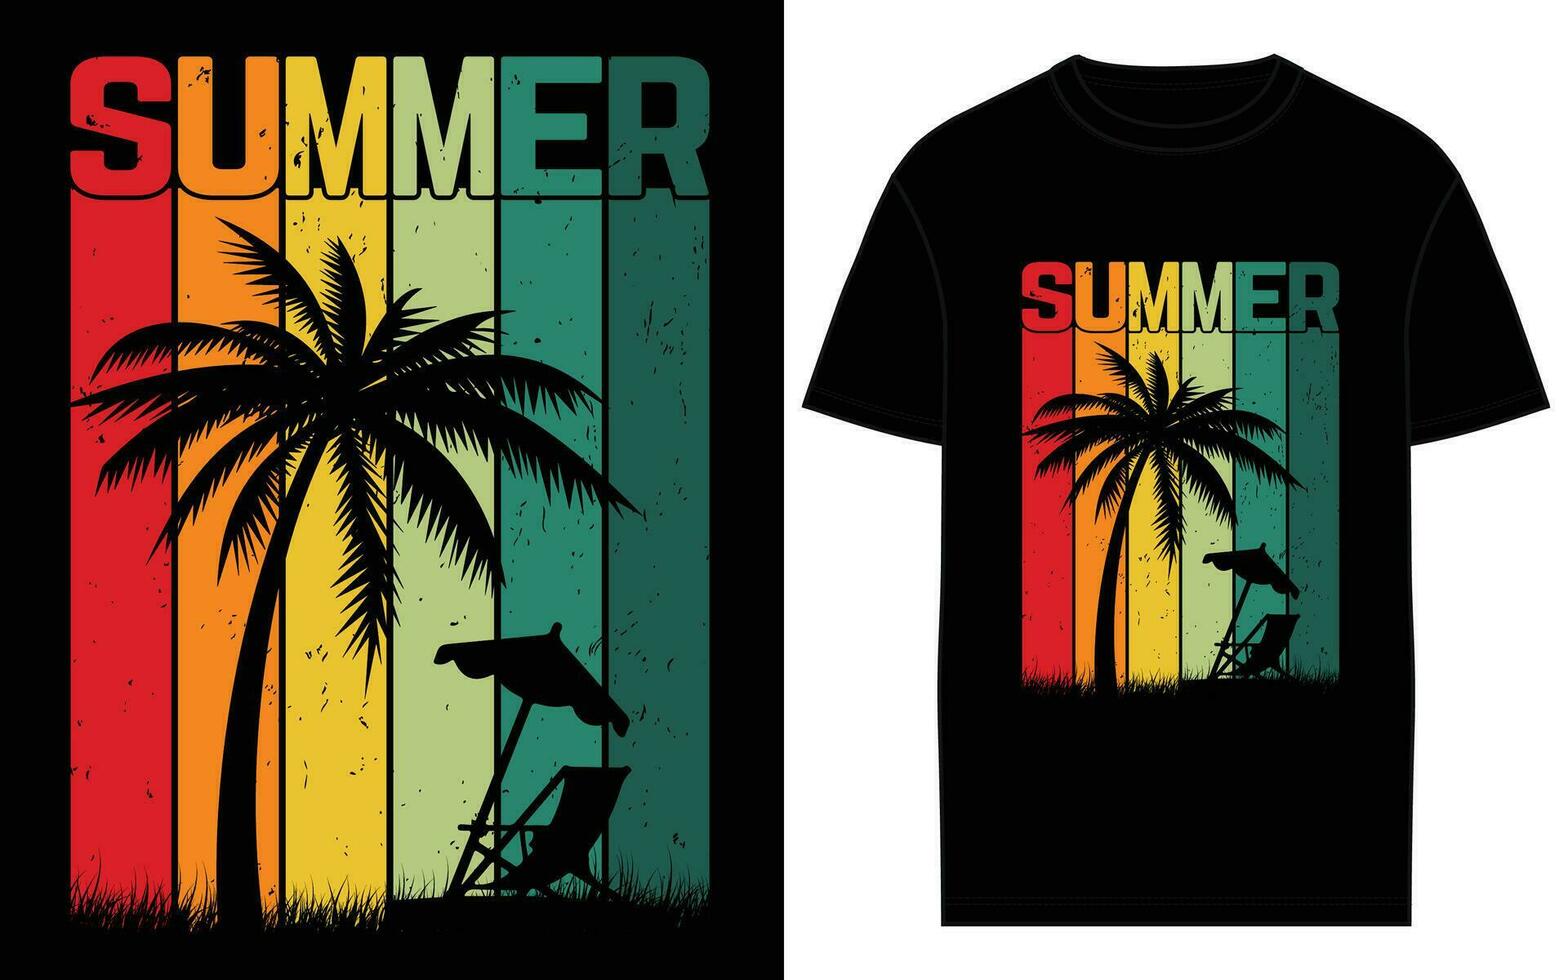 vettore estate creativo maglietta disegni per il migliore fare surf avventure.